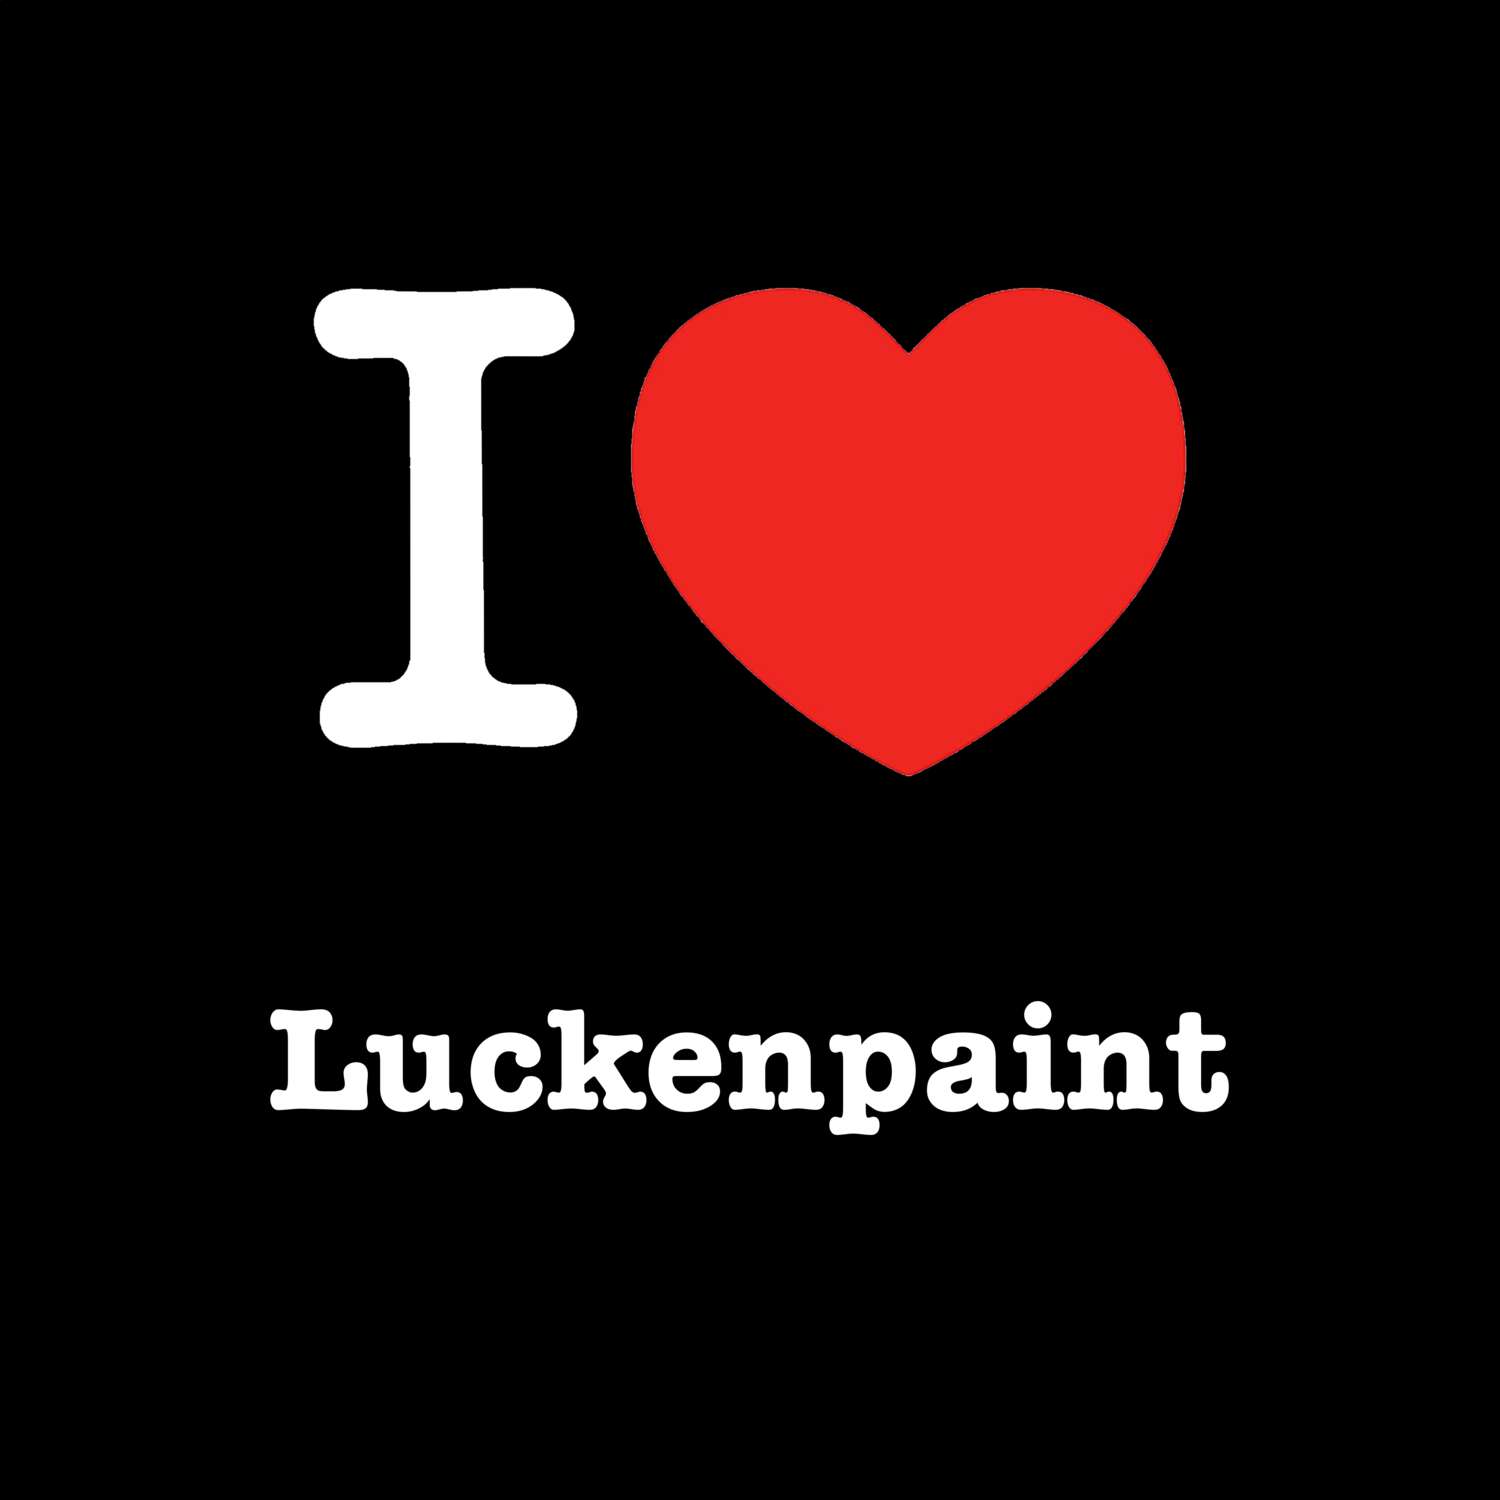 Luckenpaint T-Shirt »I love«